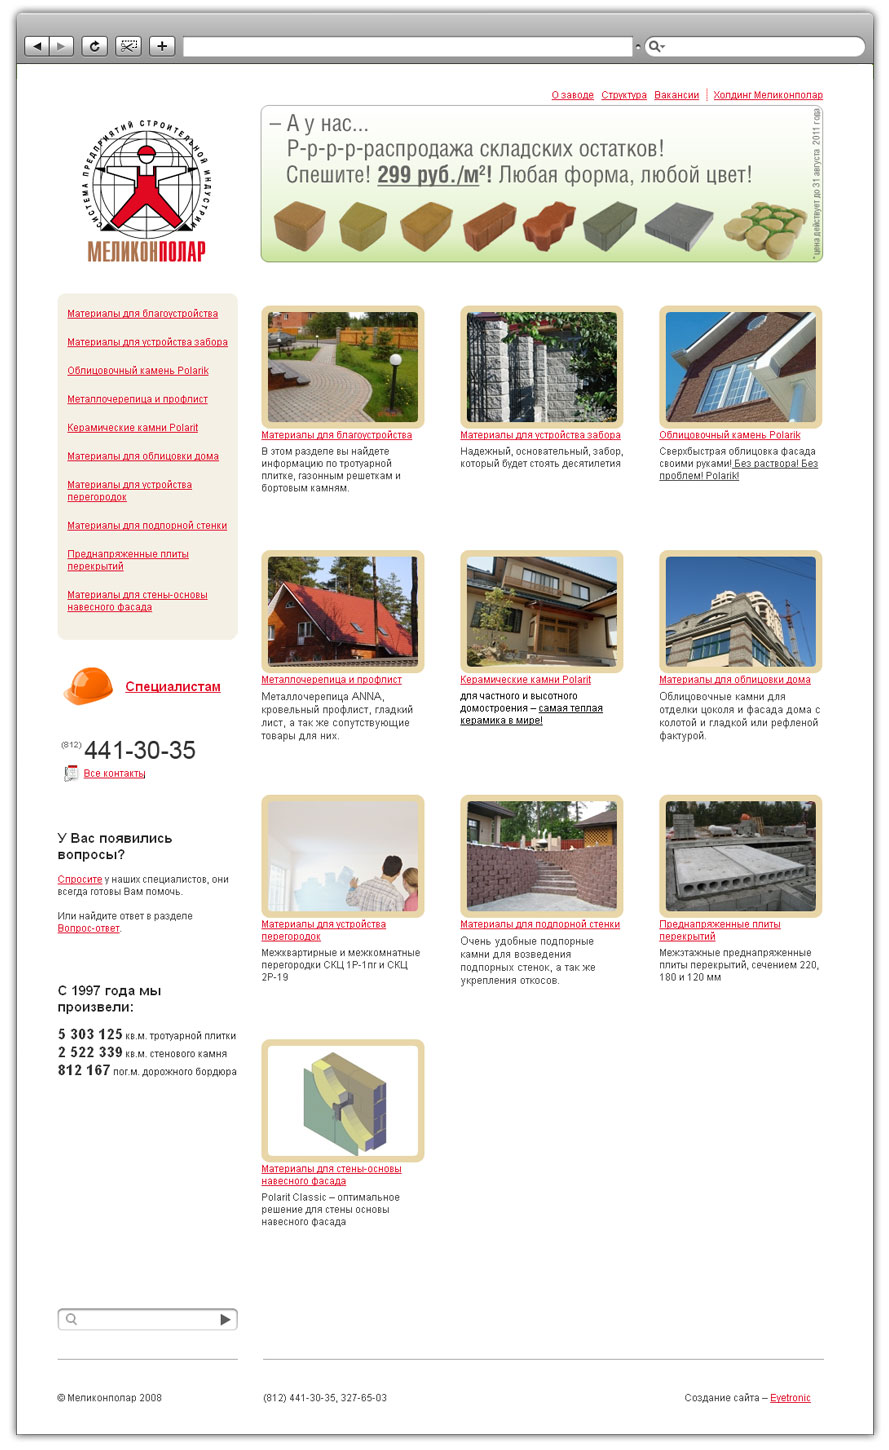 Разработка сайта для многопрофильного холдинга, занимающегося строительными материалами и девелопментом «Меликонполар» - 3